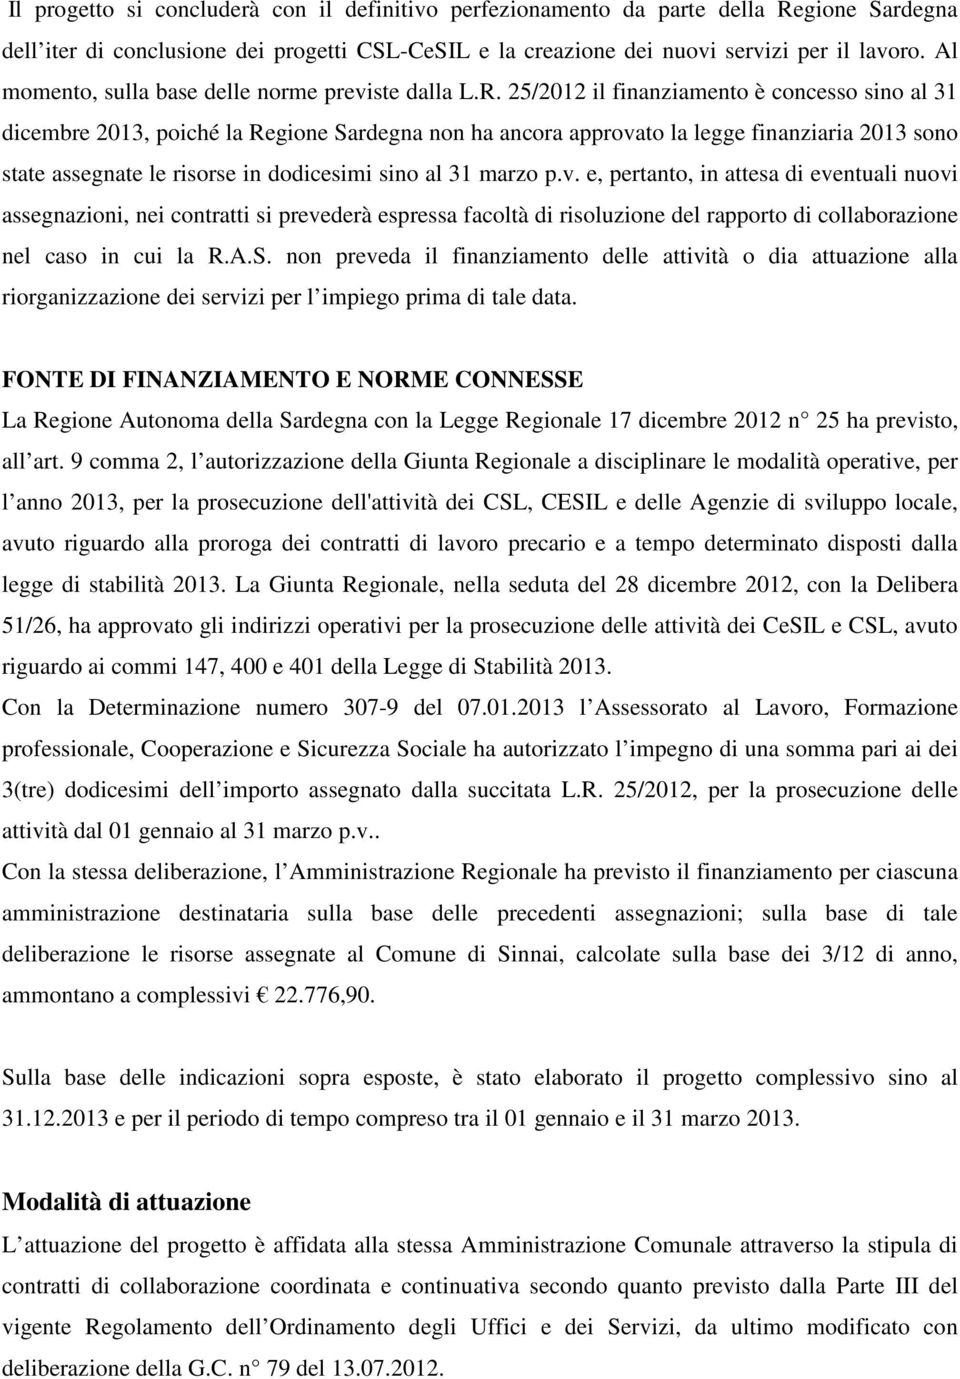 25/2012 il finanziamento è concesso sino al 31 dicembre 2013, poiché la Regione Sardegna non ha ancora approvato la legge finanziaria 2013 sono state assegnate le risorse in dodicesimi sino al 31